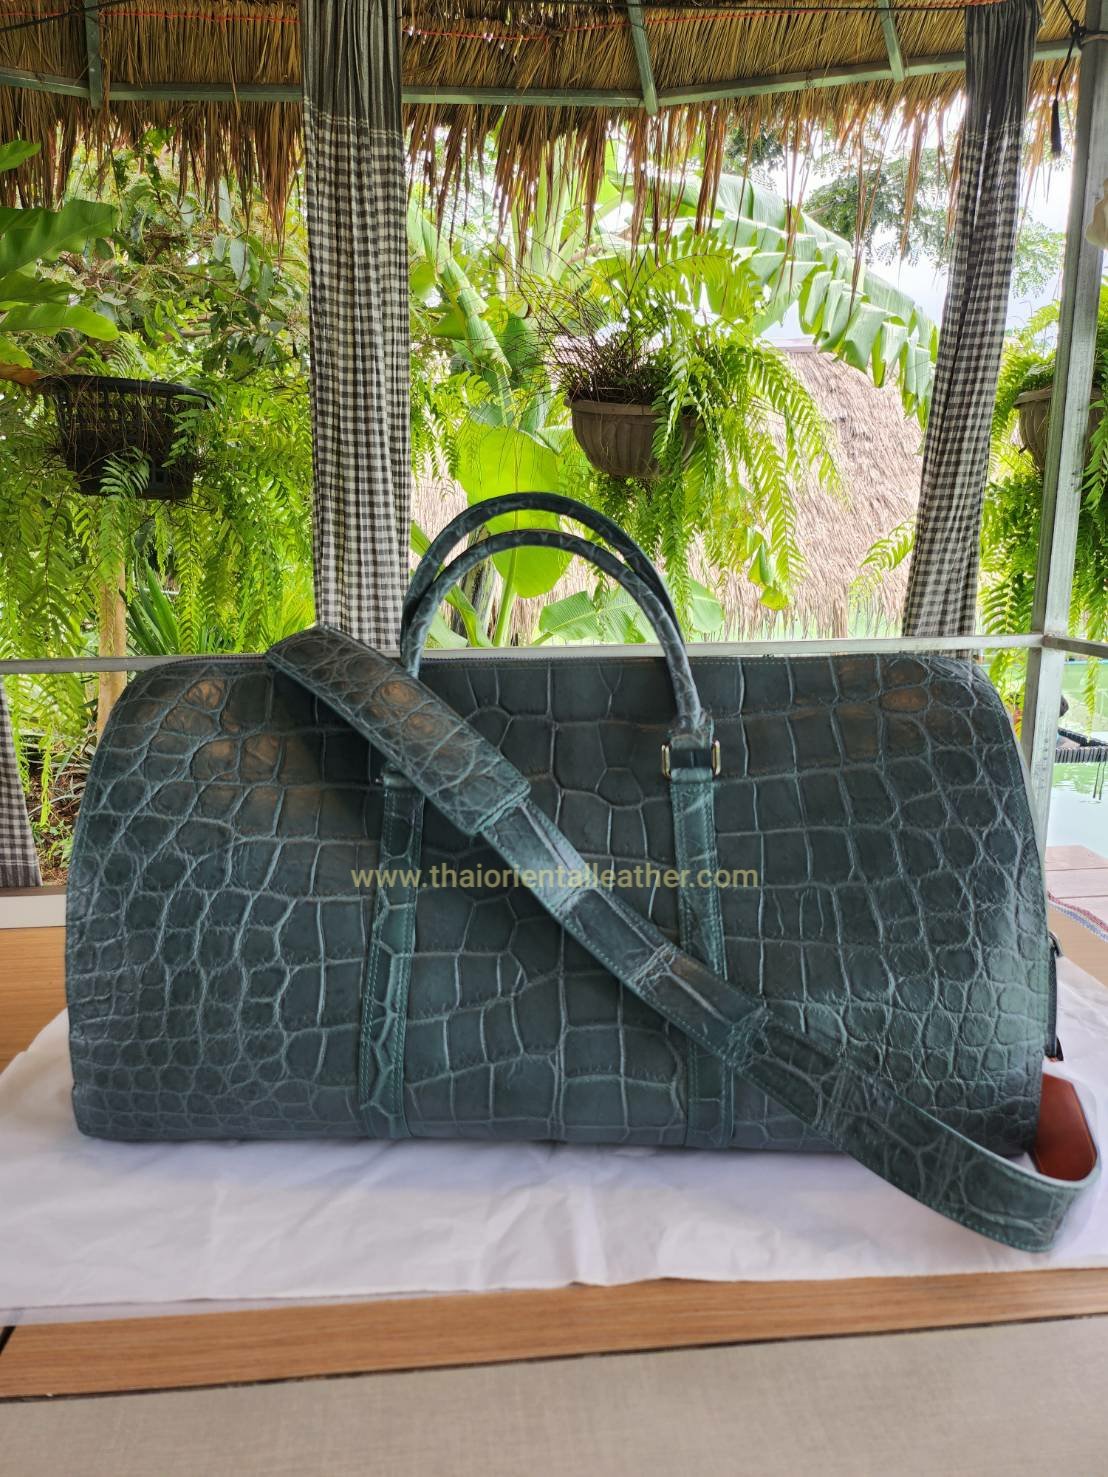 Burgundy Croc Embossed Genuine Leather Handbags Satchel Bags for Work |  Baginning